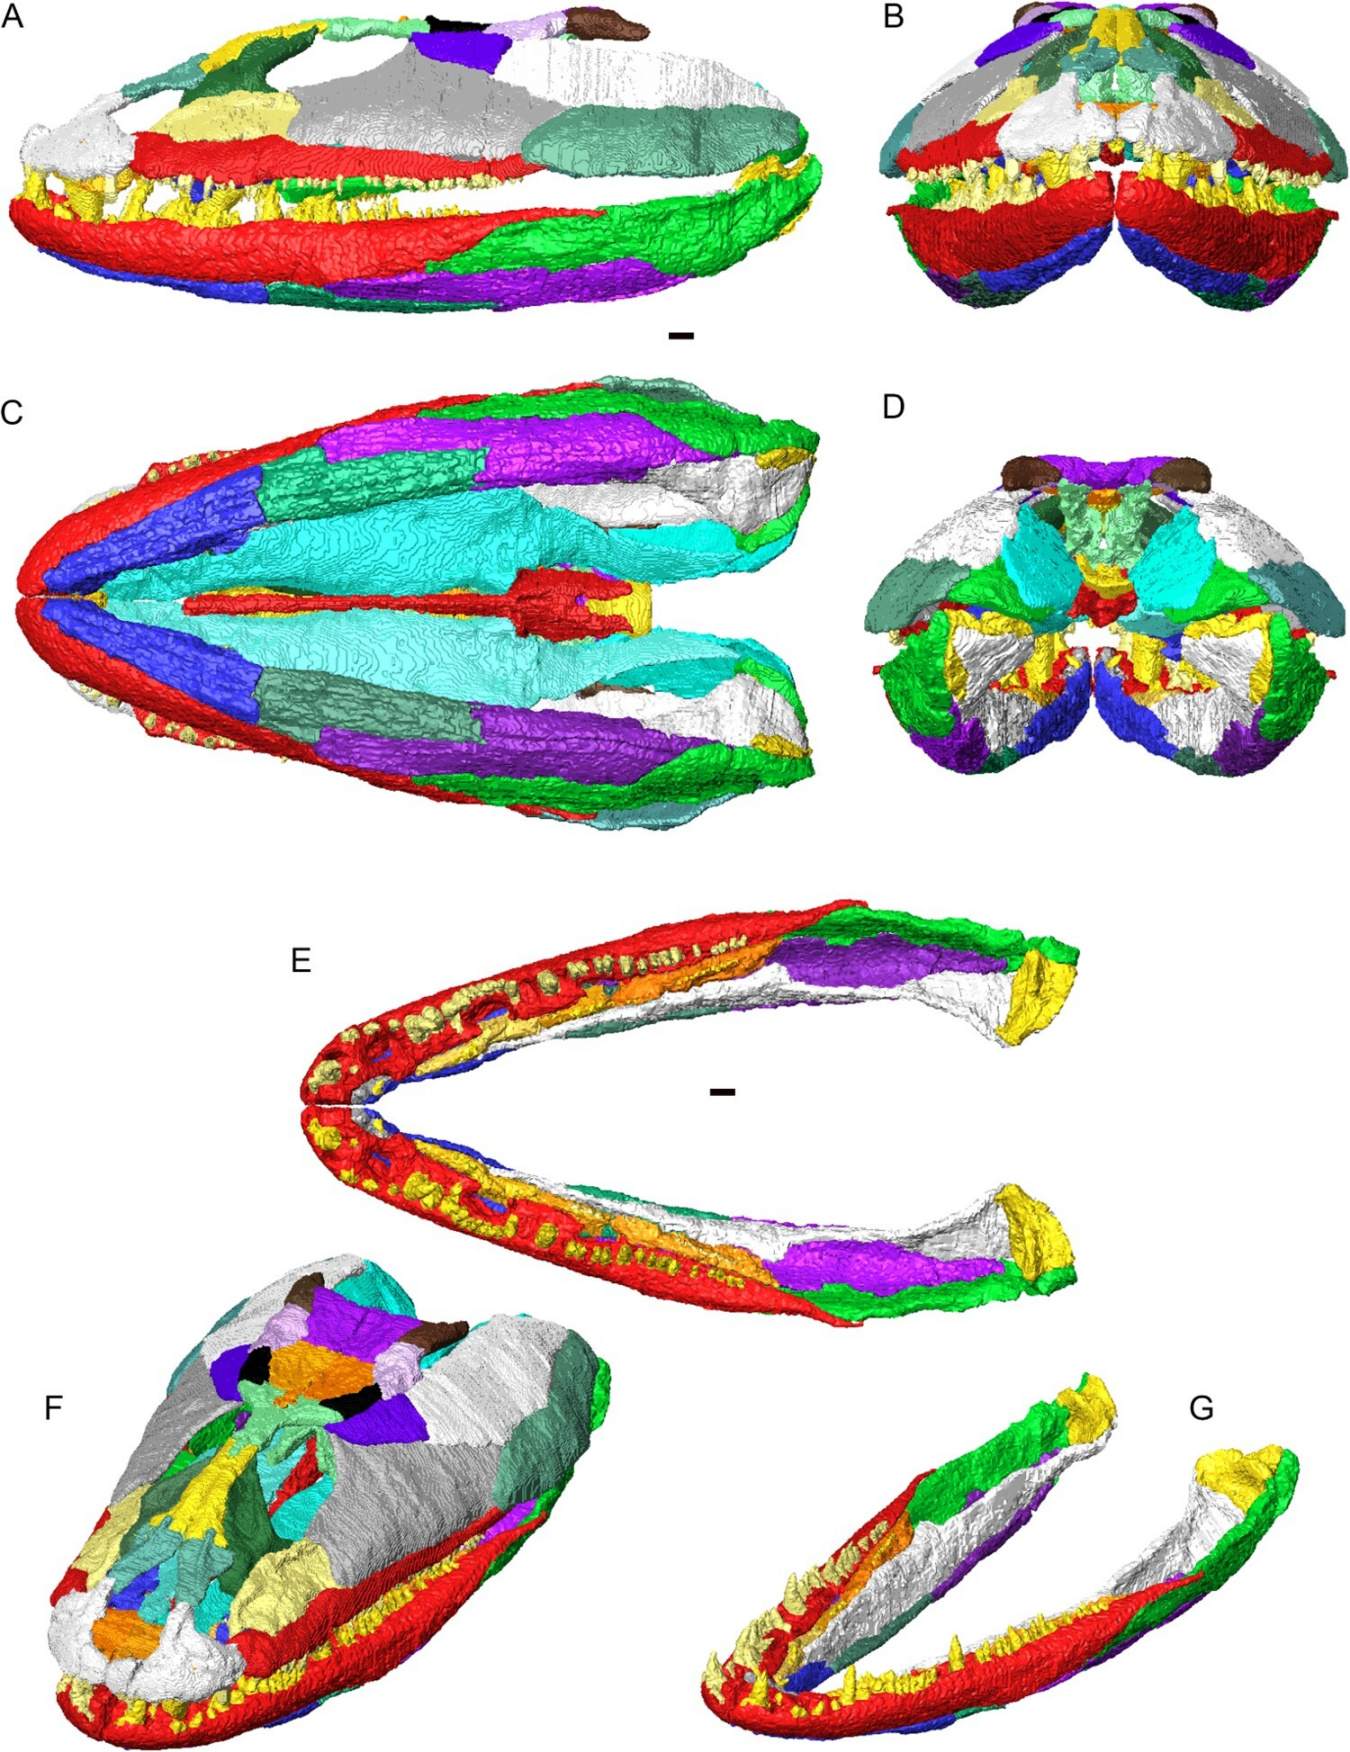 Pembinaan semula 3D tengkorak dan rahang bawah Crassigyrinus scoticus dalam artikulasi. Tulang individu ditunjukkan dalam warna yang berbeza. A, pandangan sisi kiri; B, pandangan hadapan; C, pandangan perut; D, pandangan belakang; E, rahang bawah bersendi (tiada tengkorak) dalam pandangan dorsal; F, tengkorak dan rahang bawah dalam pandangan serong dorsolateral; G, rahang bawah yang diartikulasikan dalam pandangan serong dorsolateral.